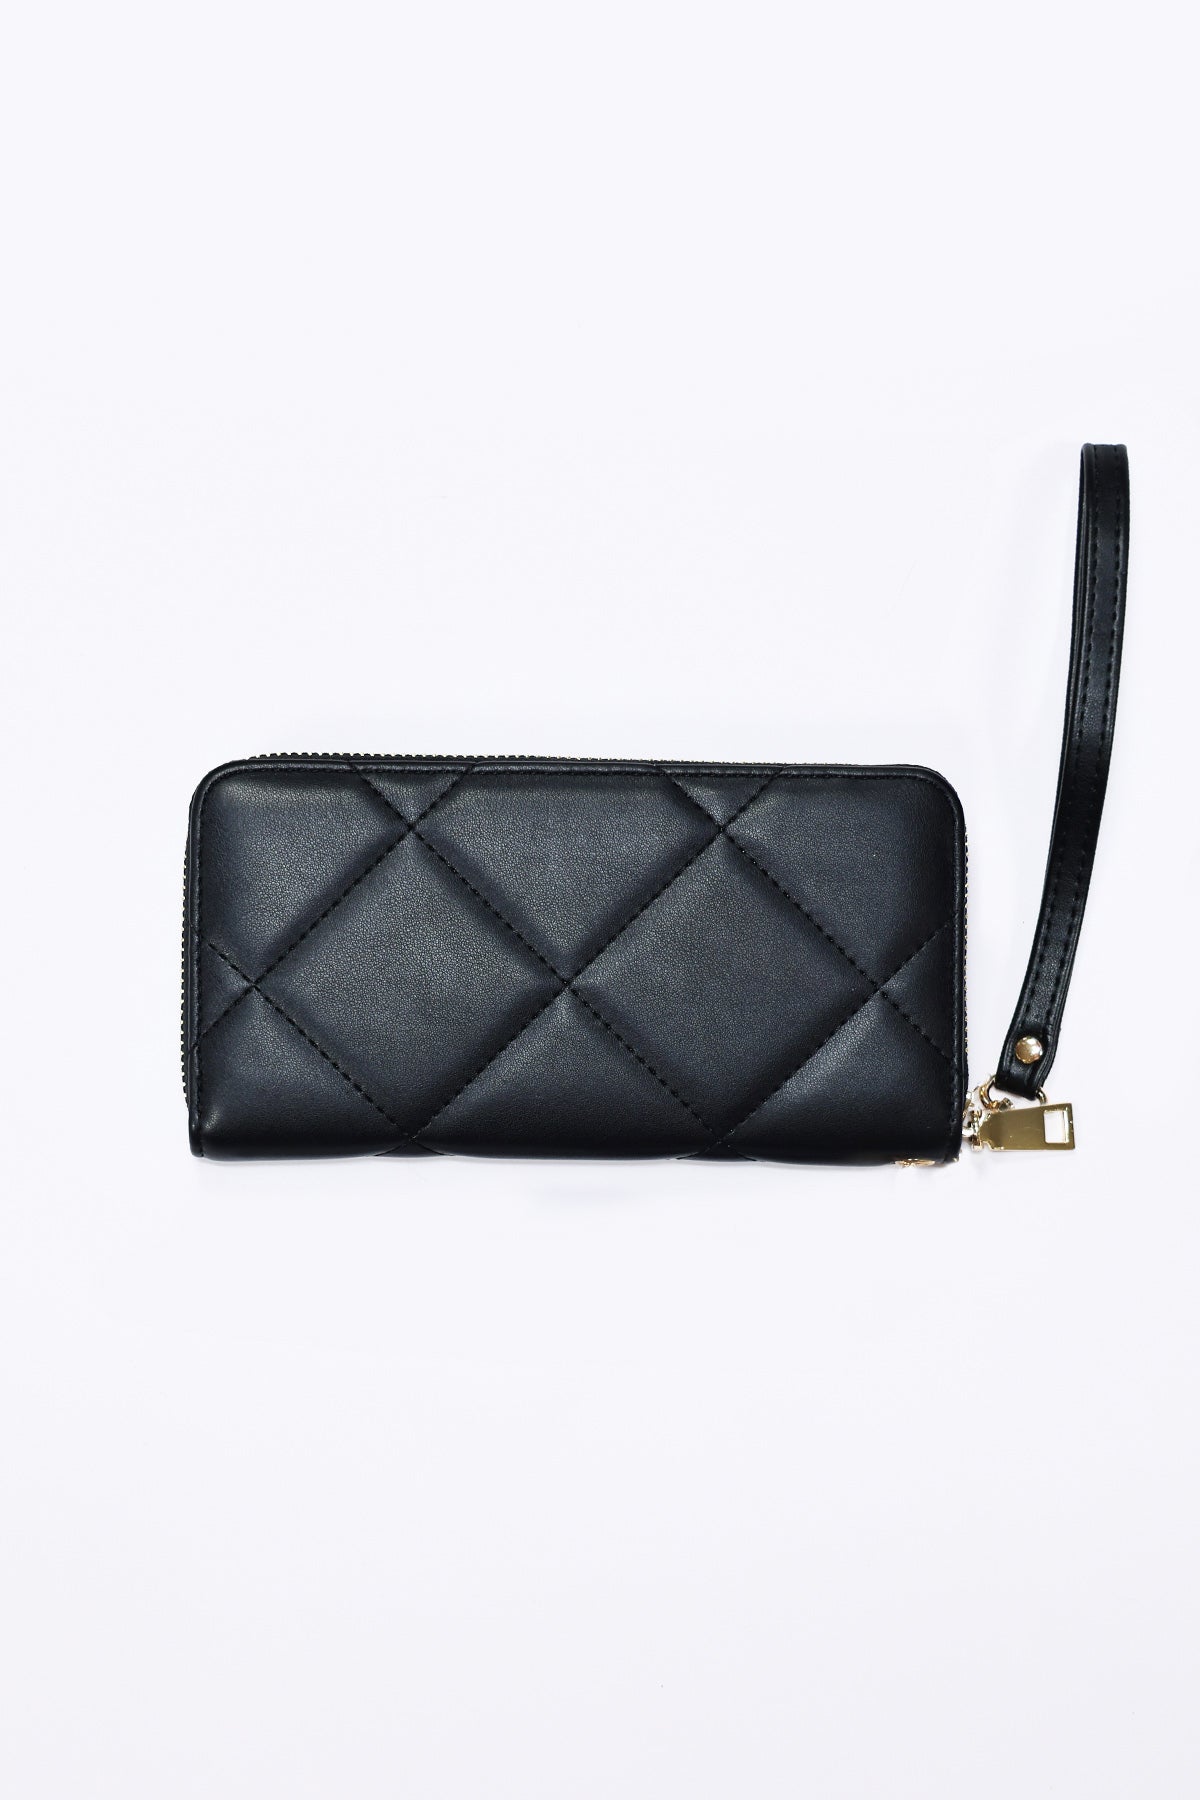 CH Carolina Herrera Black Quilted Leather Tote Shoulder Handbag | eBay